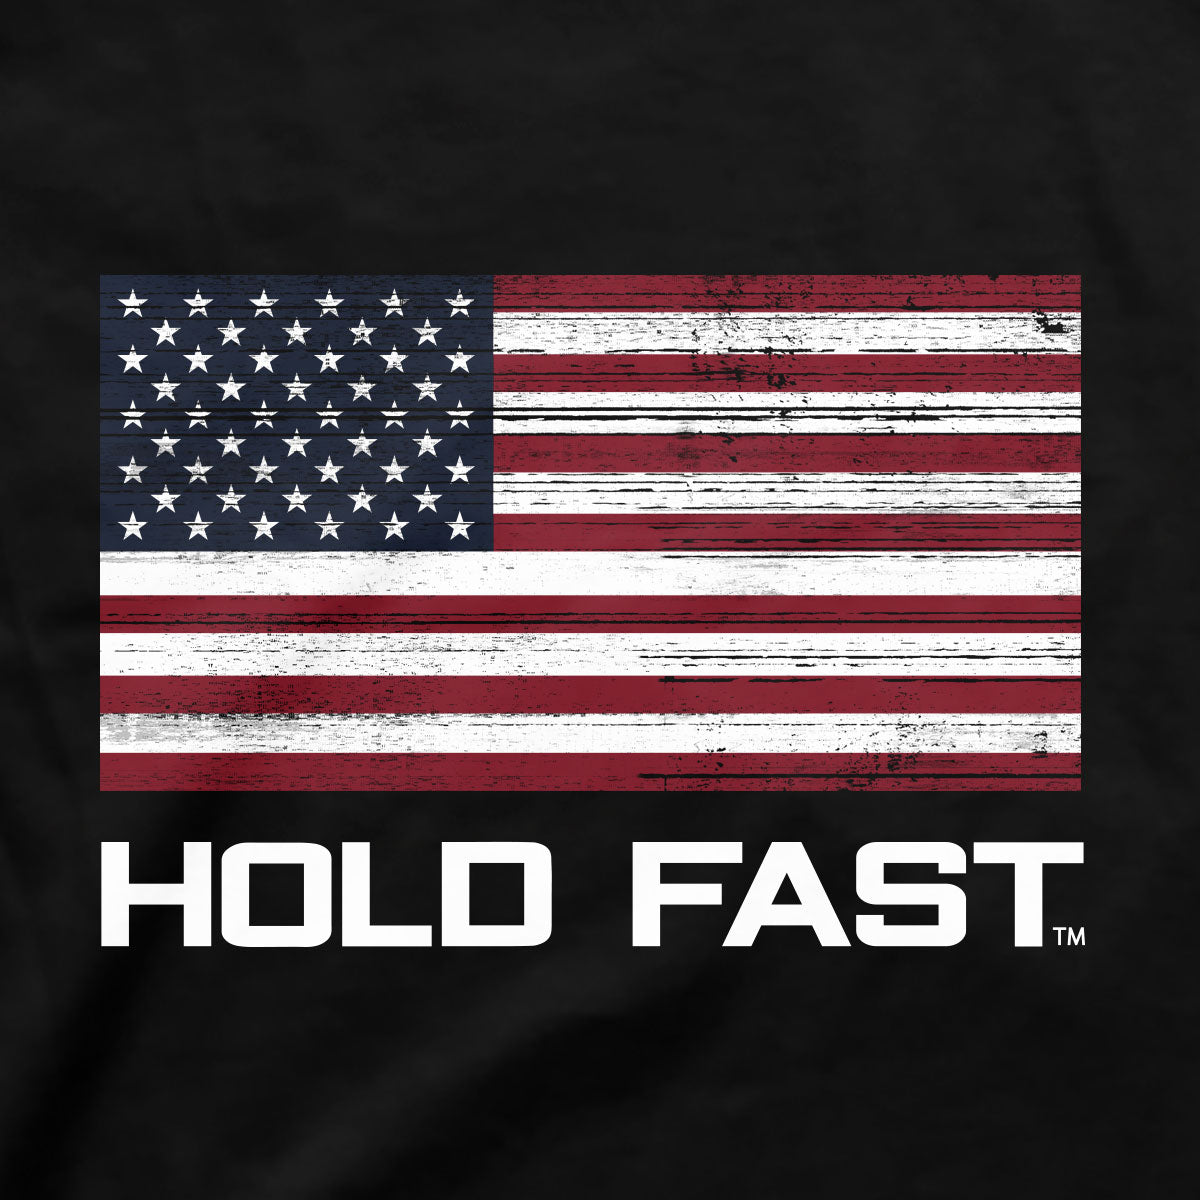 HOLD FAST US Flag Shirt for Men